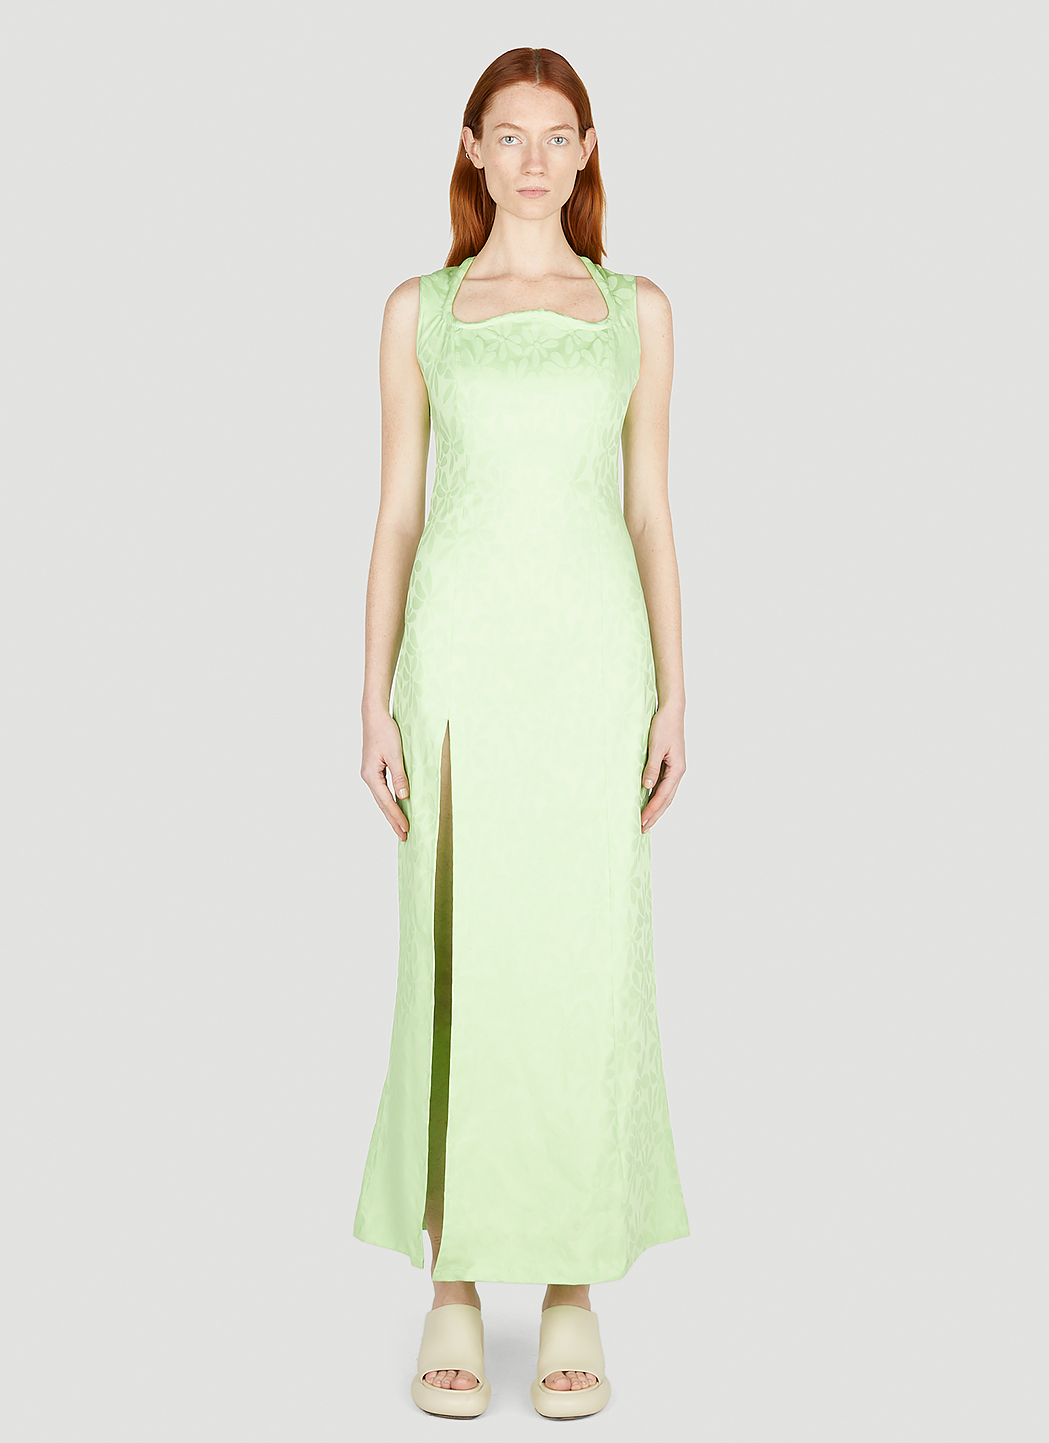 lav lektier Kro Lav aftensmad AVAVAV Unisex Tubey Dress in Green | LN-CC®